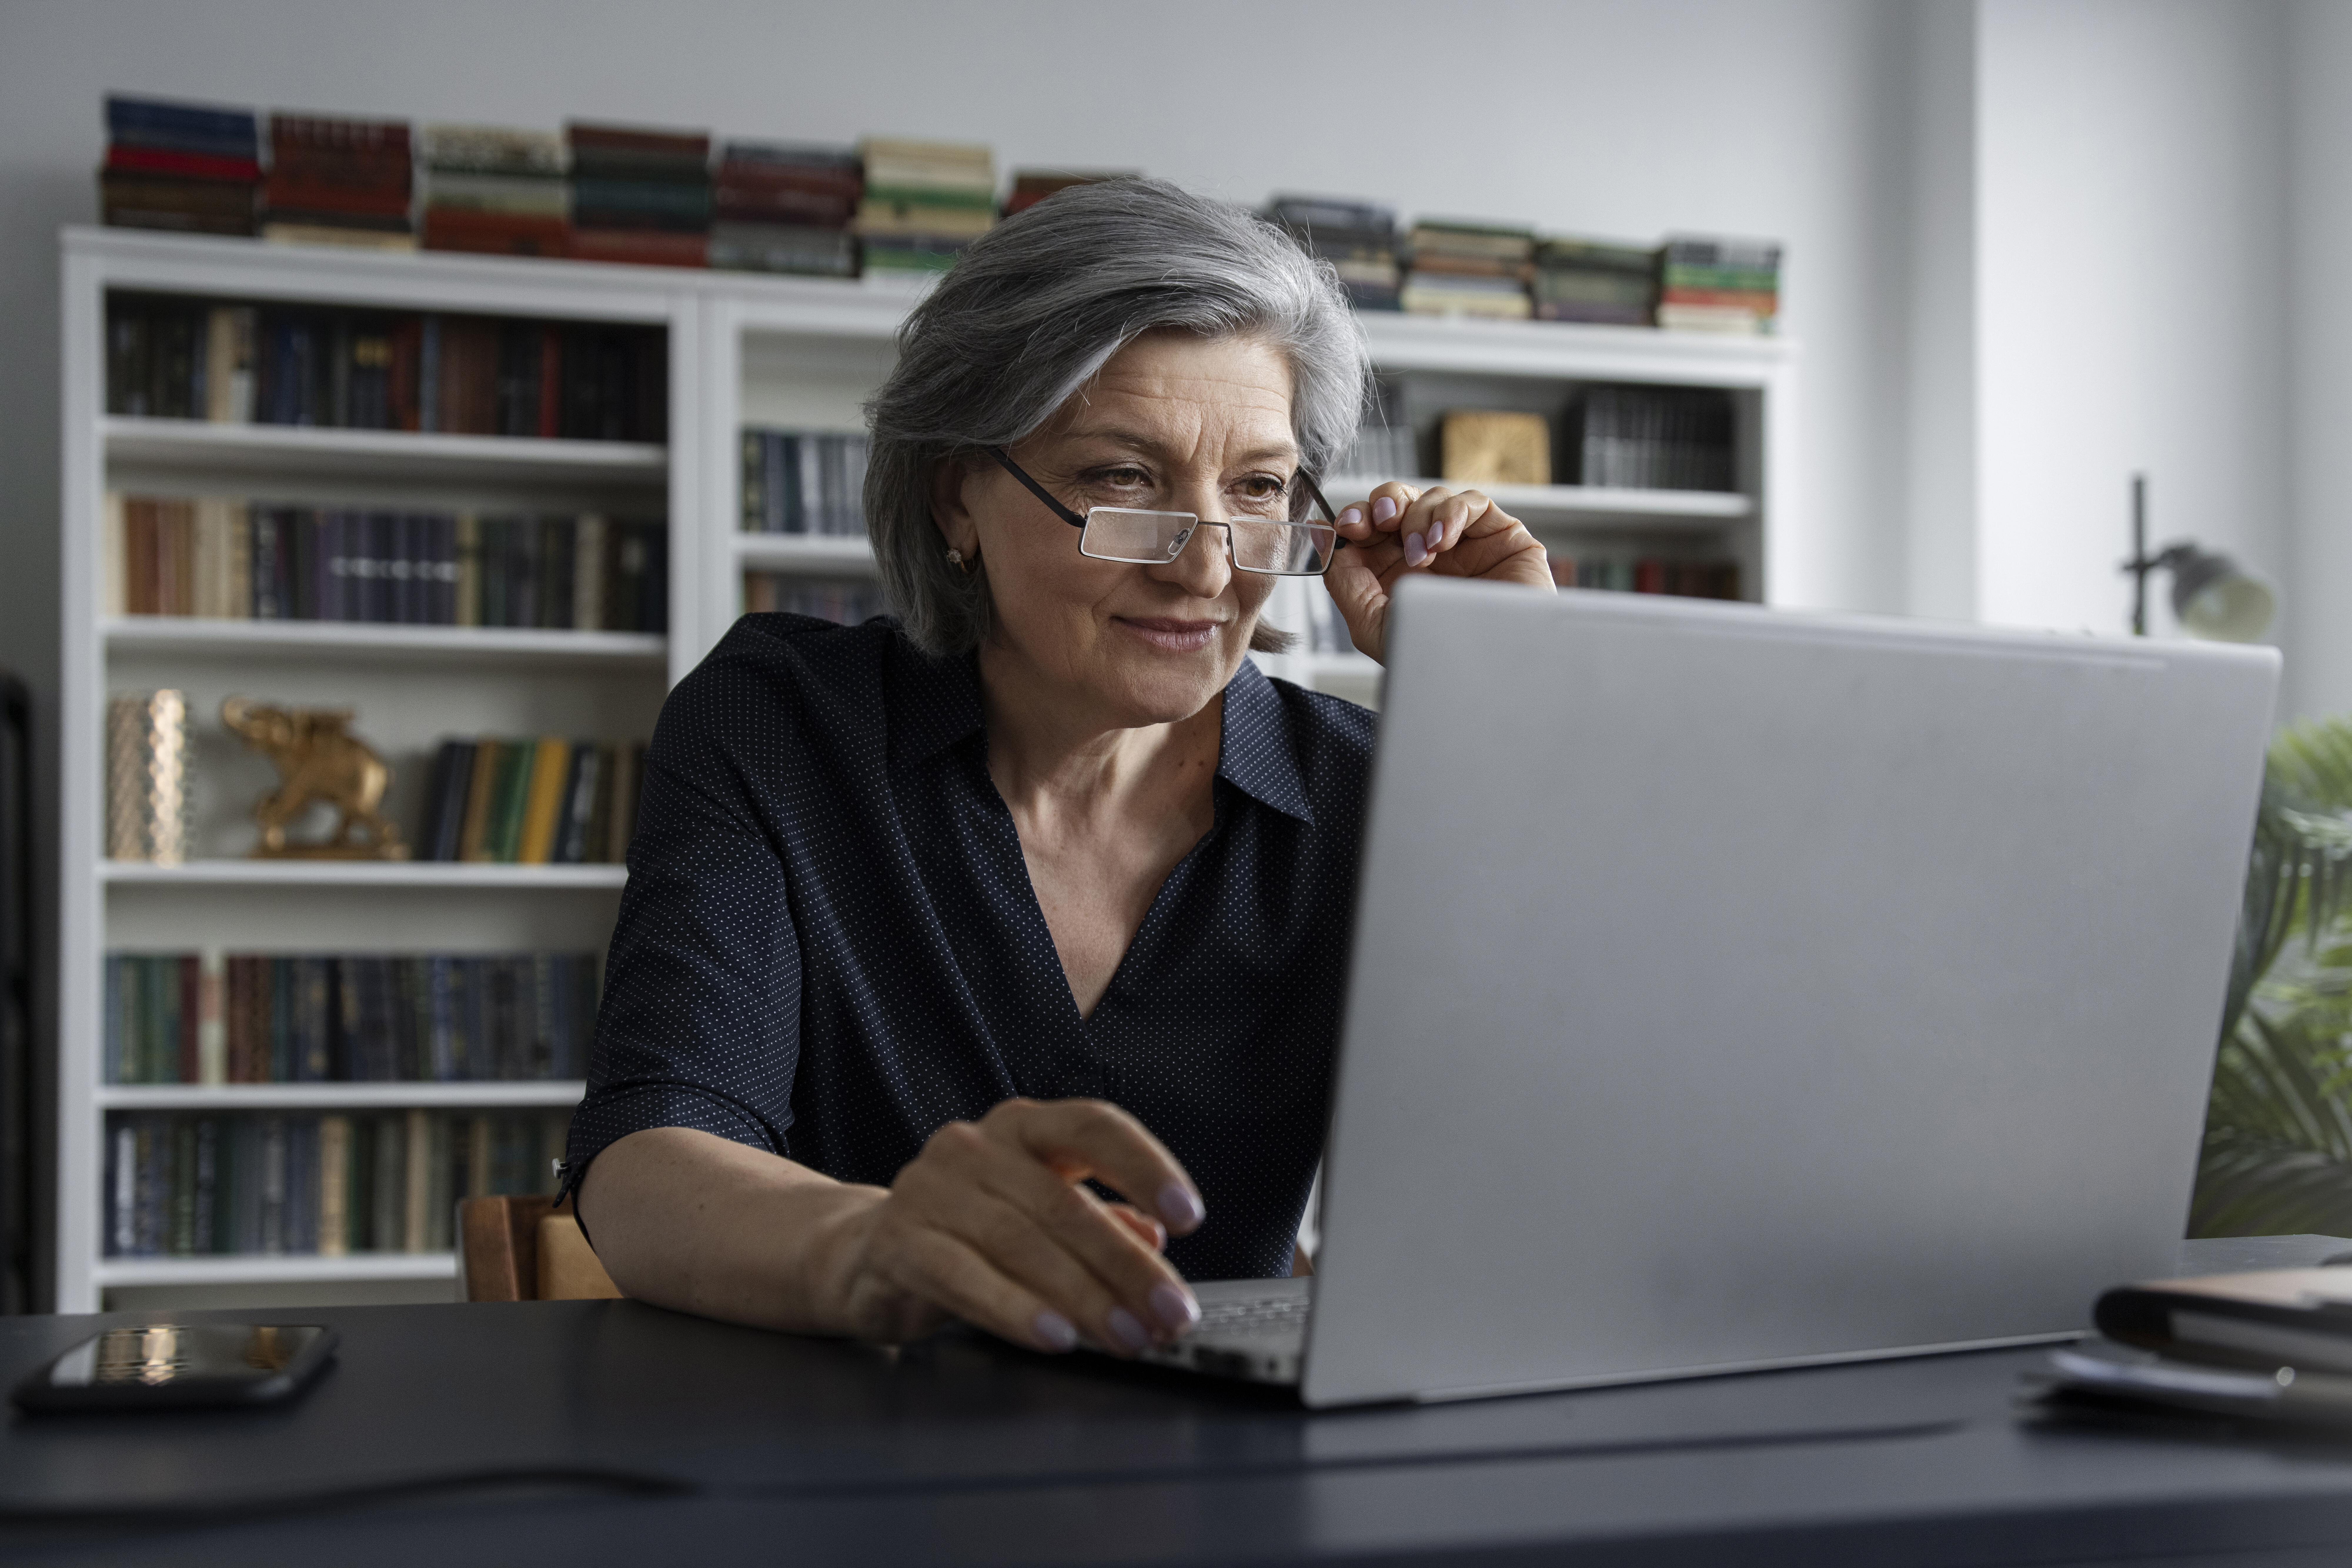 Виплата пенсії: як повідомити про зміну реквізитів онлайн